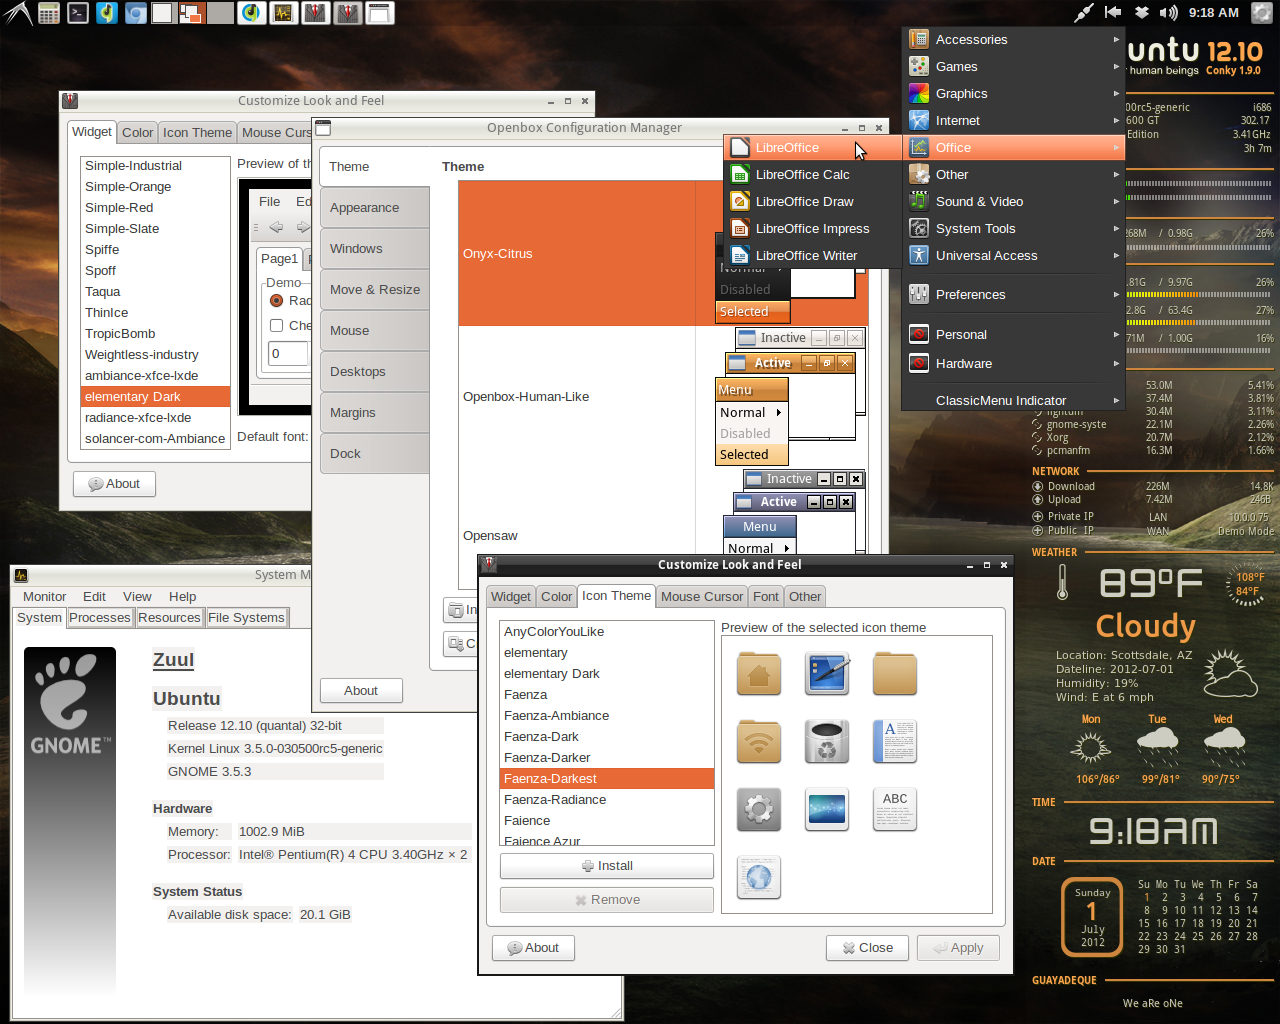 vindsl-desktop-1-jul-2012-2.png